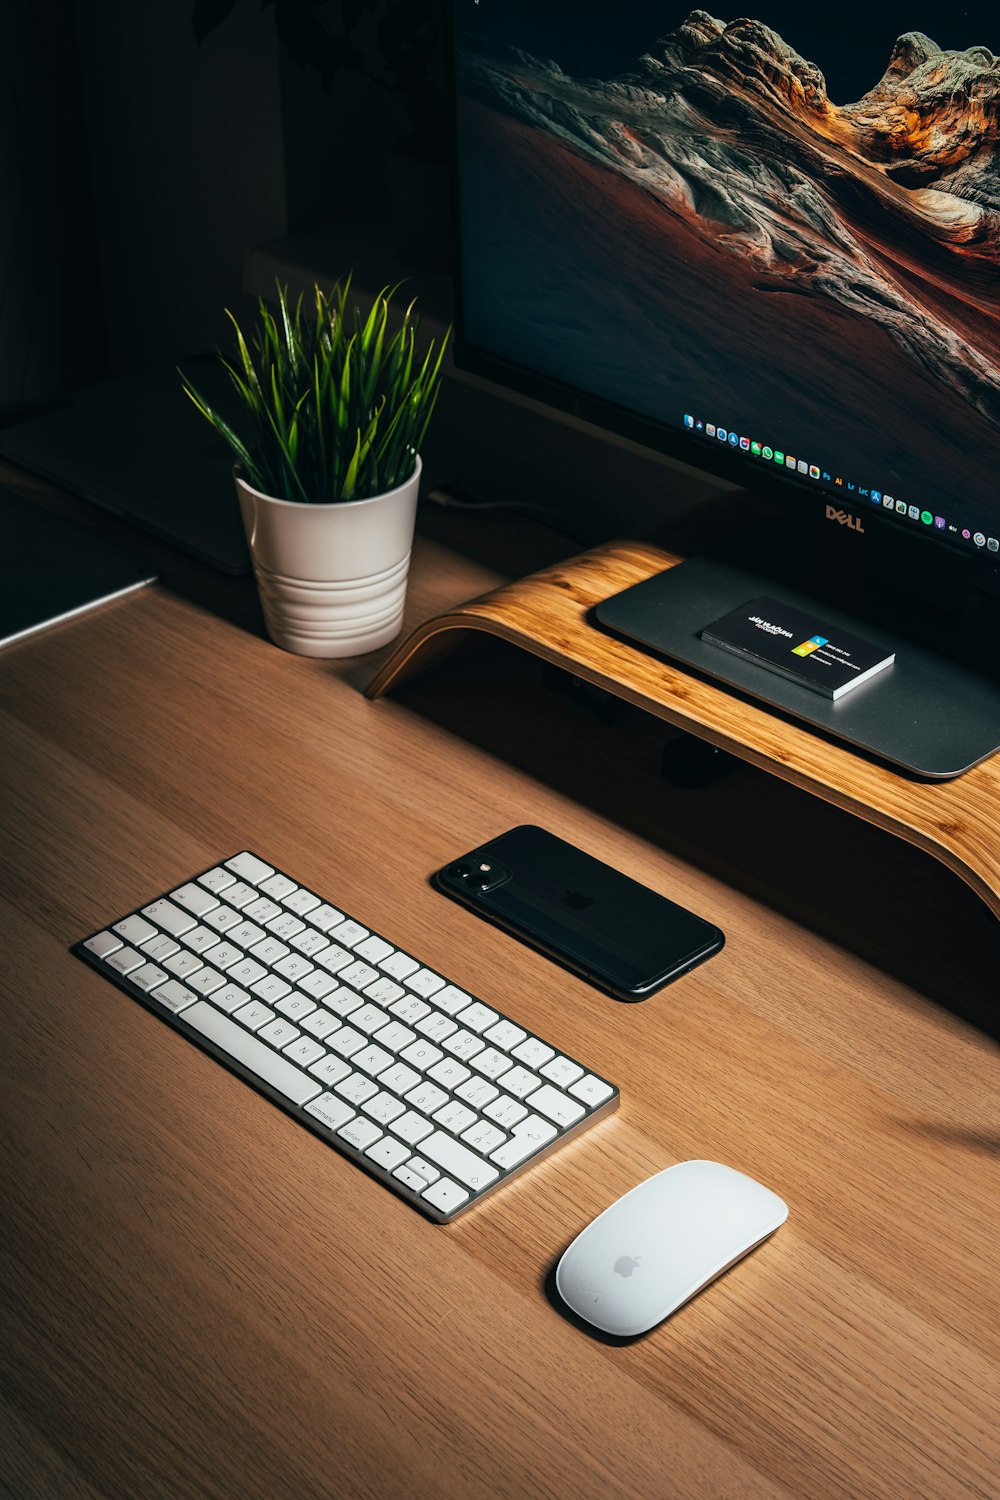 iPhone 5 noir à côté du clavier Apple blanc sur un bureau en bois marron